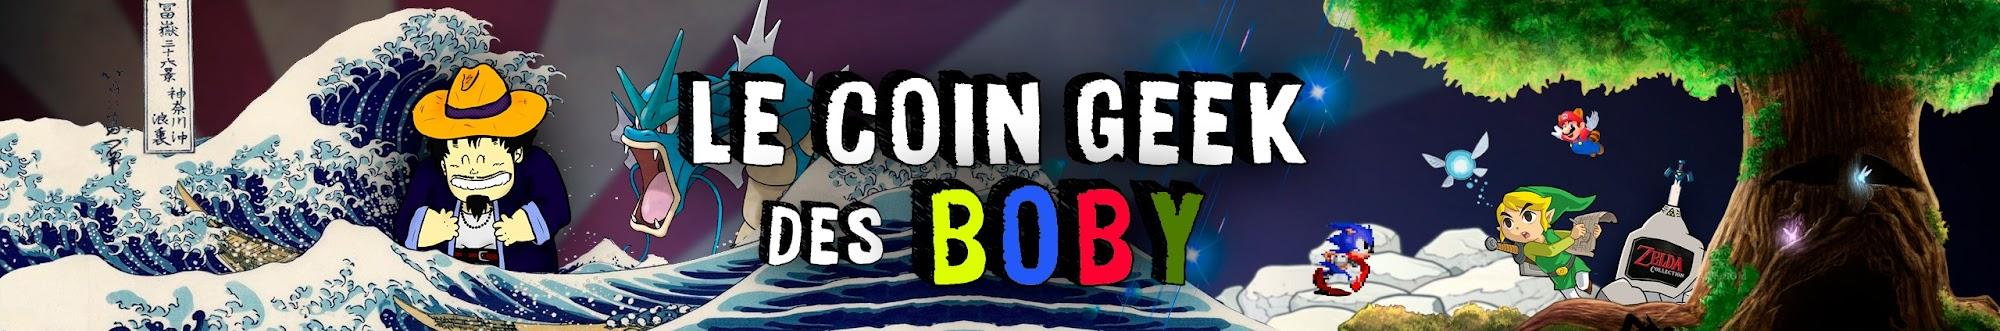 Le Coin Geek des Boby